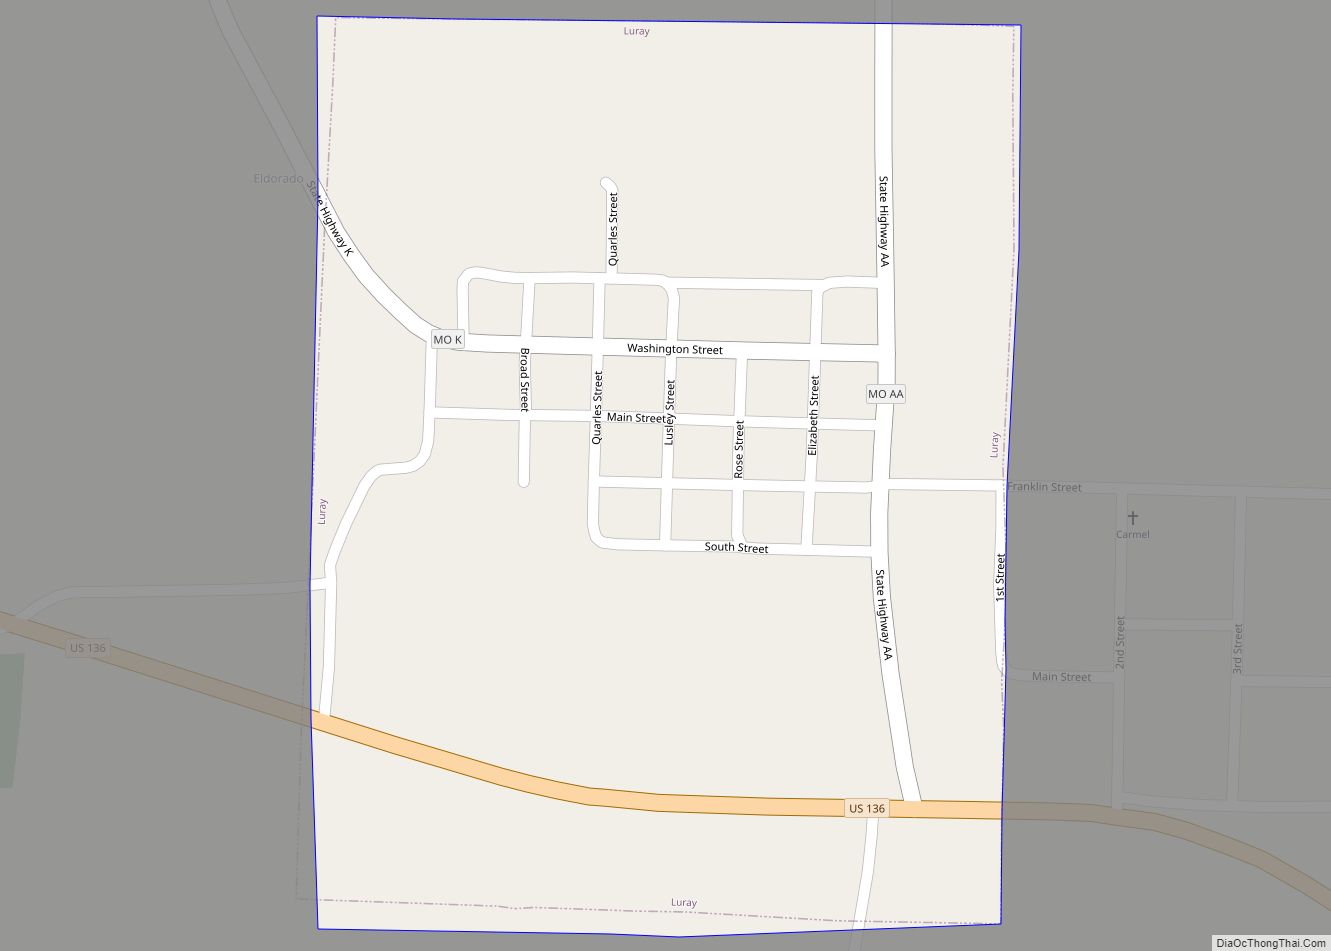 Map of Luray village, Missouri